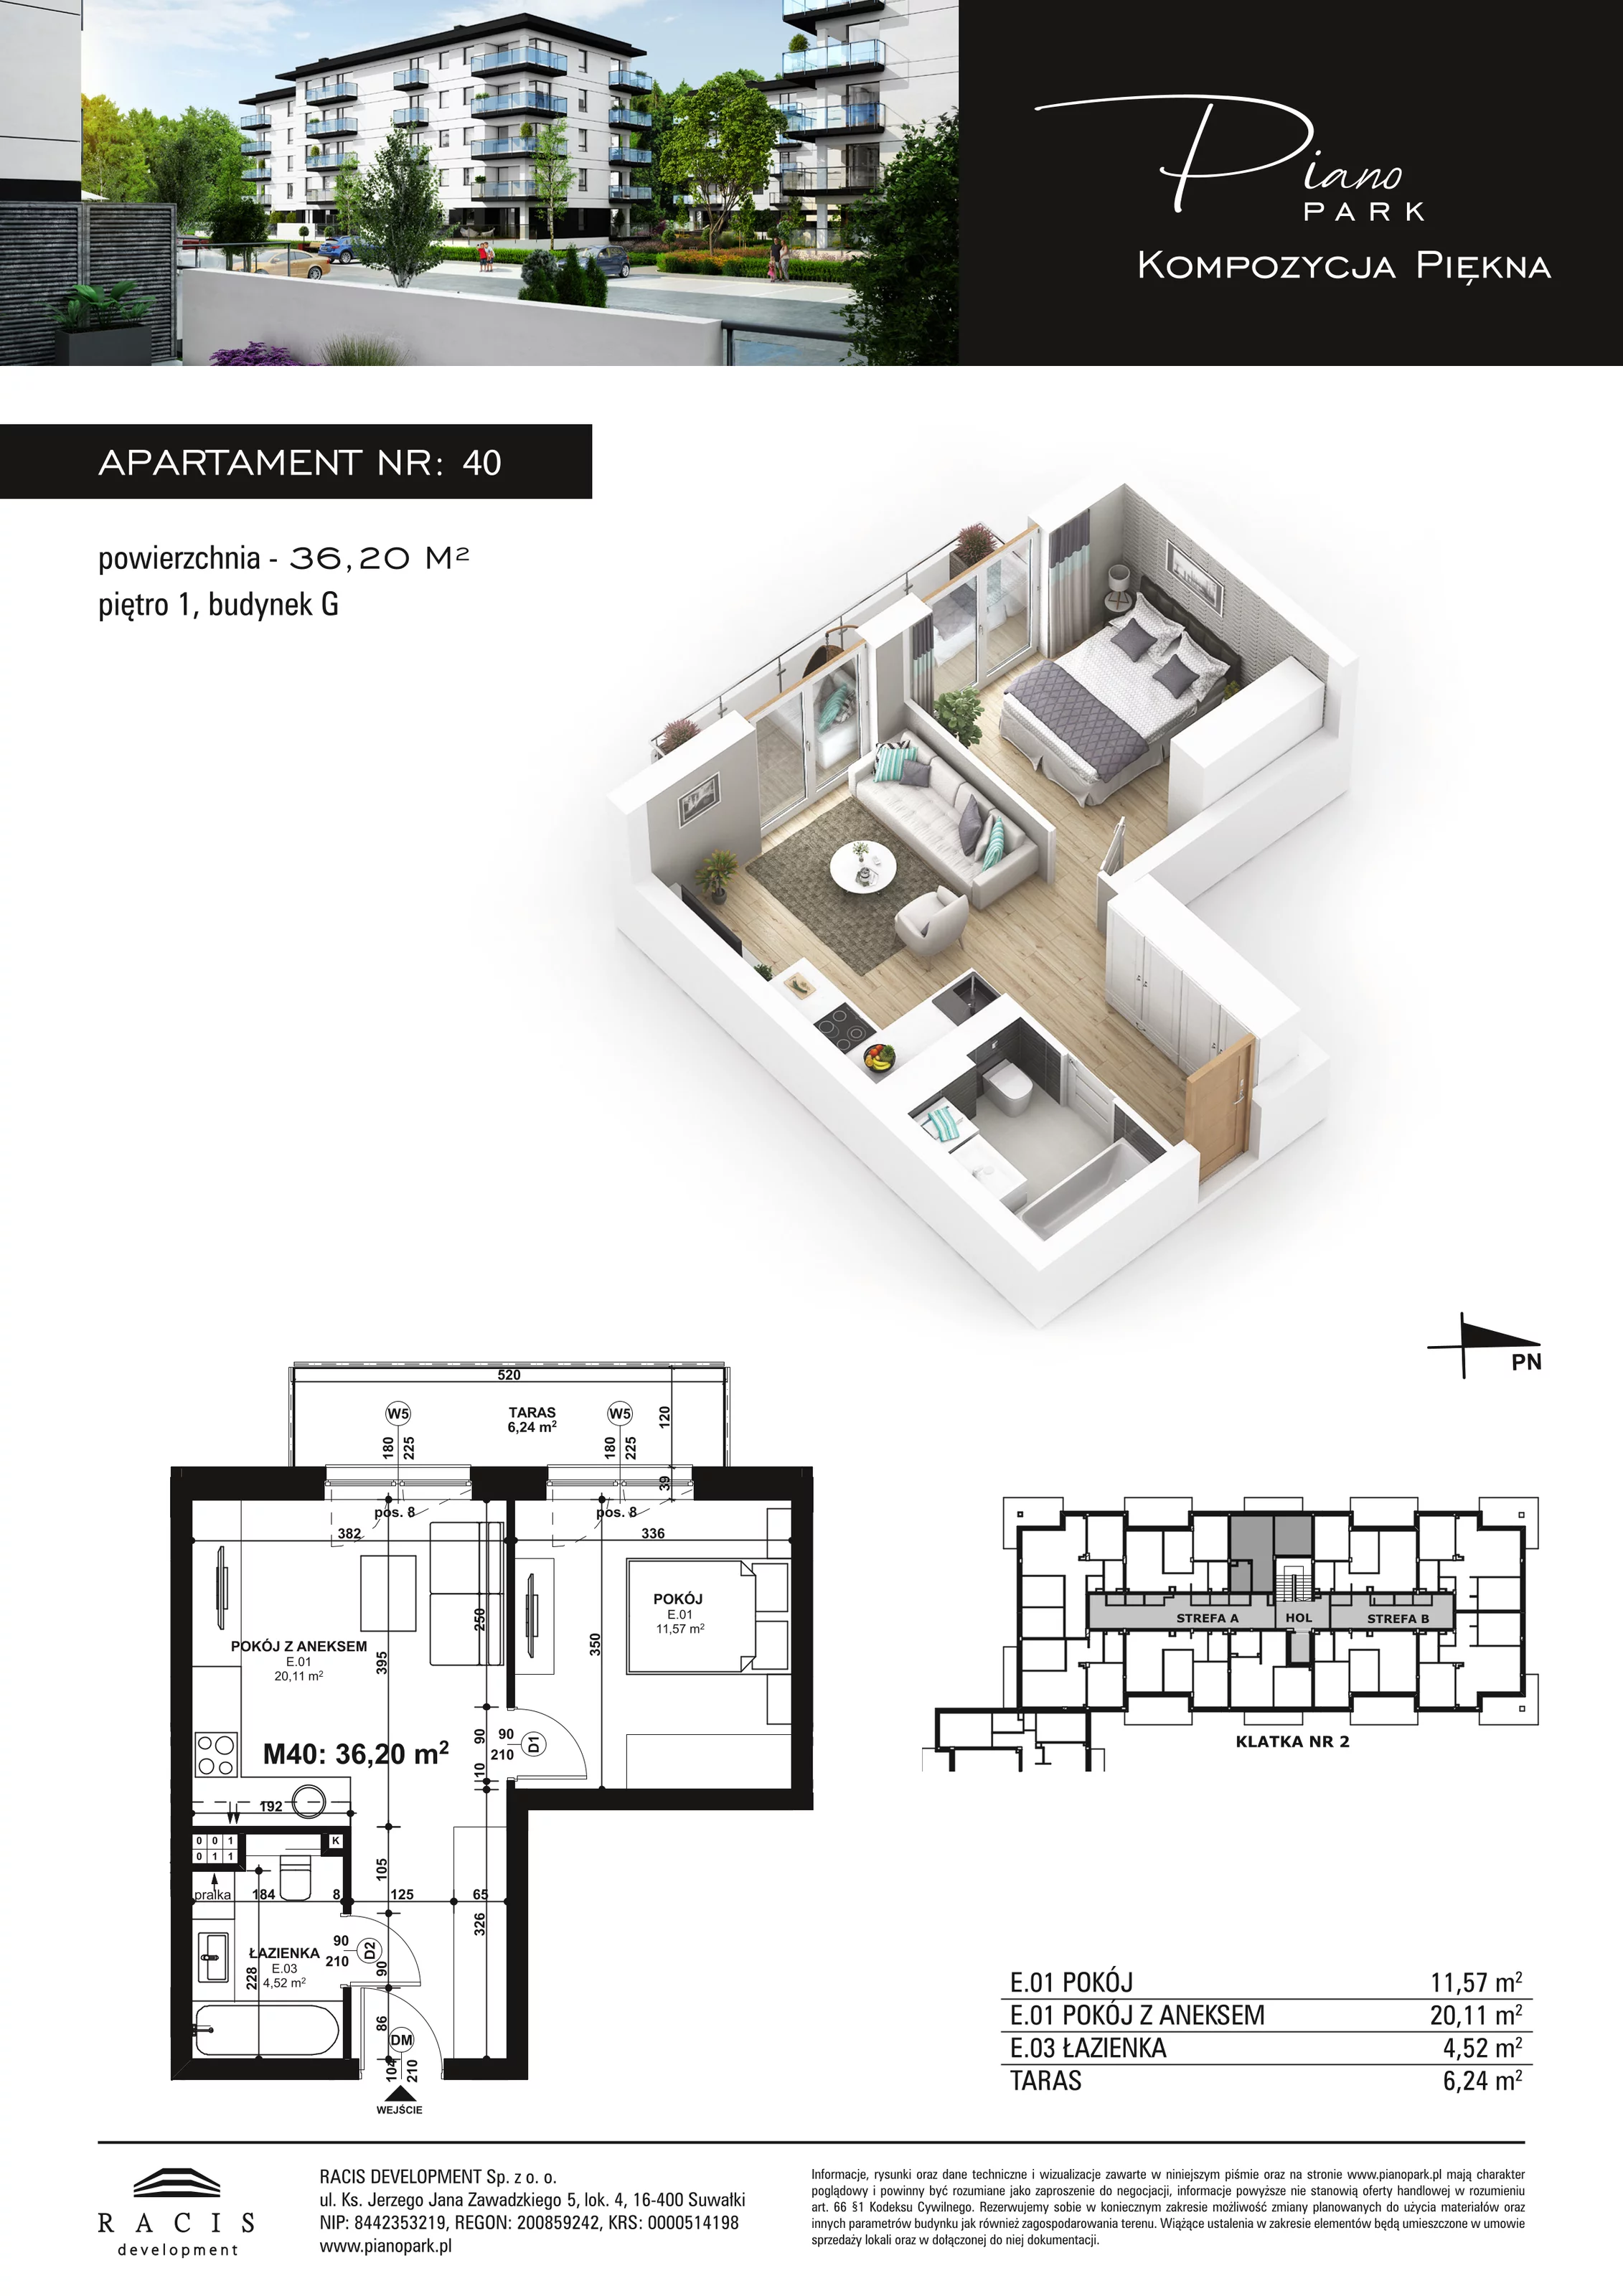 Apartament 36,20 m², piętro 1, oferta nr G40, Piano Park, Suwałki, Czarnoziem, ul. Witolda "Rotmistrza" Pileckiego